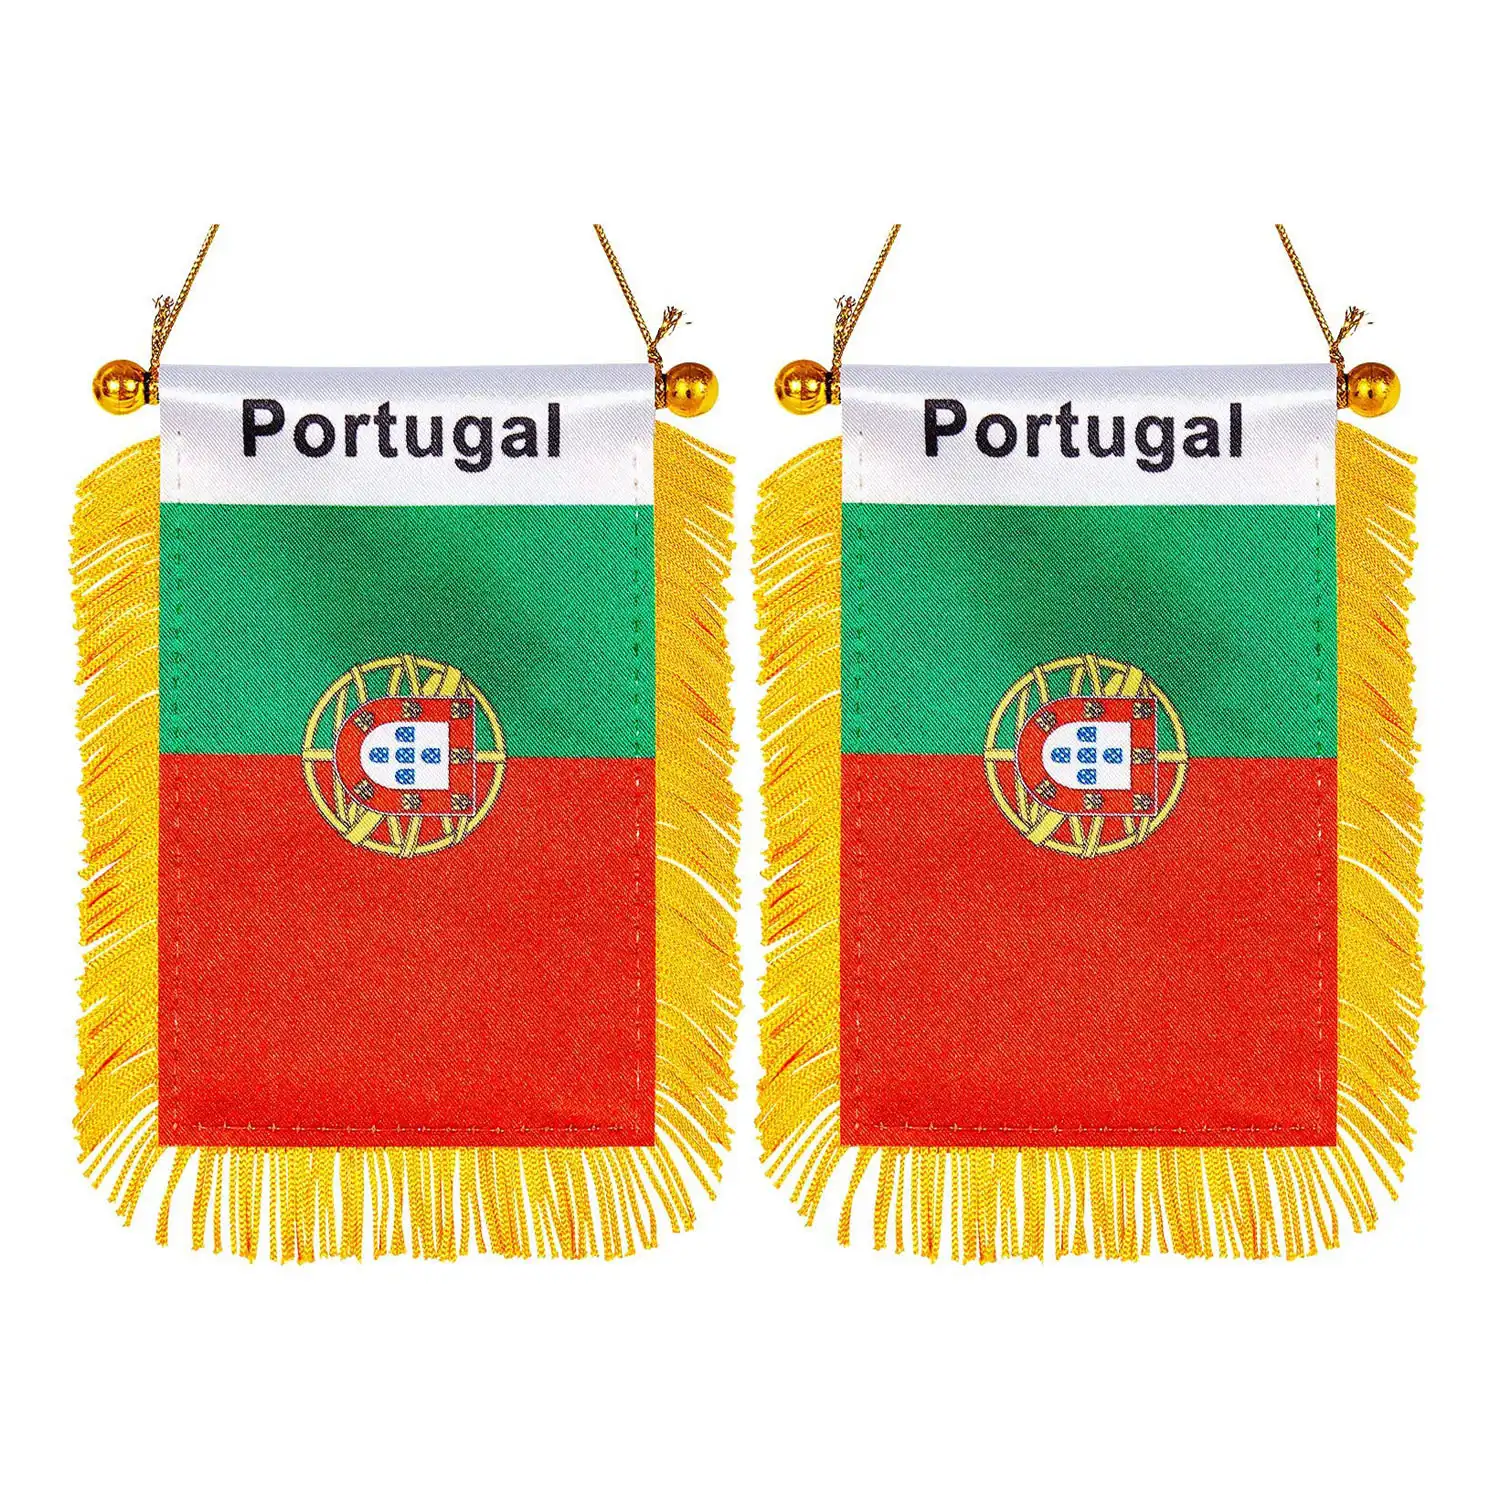 Portugal retrovisor para carro com franja portugal, bandeira de bandeira para pendurar no carro com franja portugal